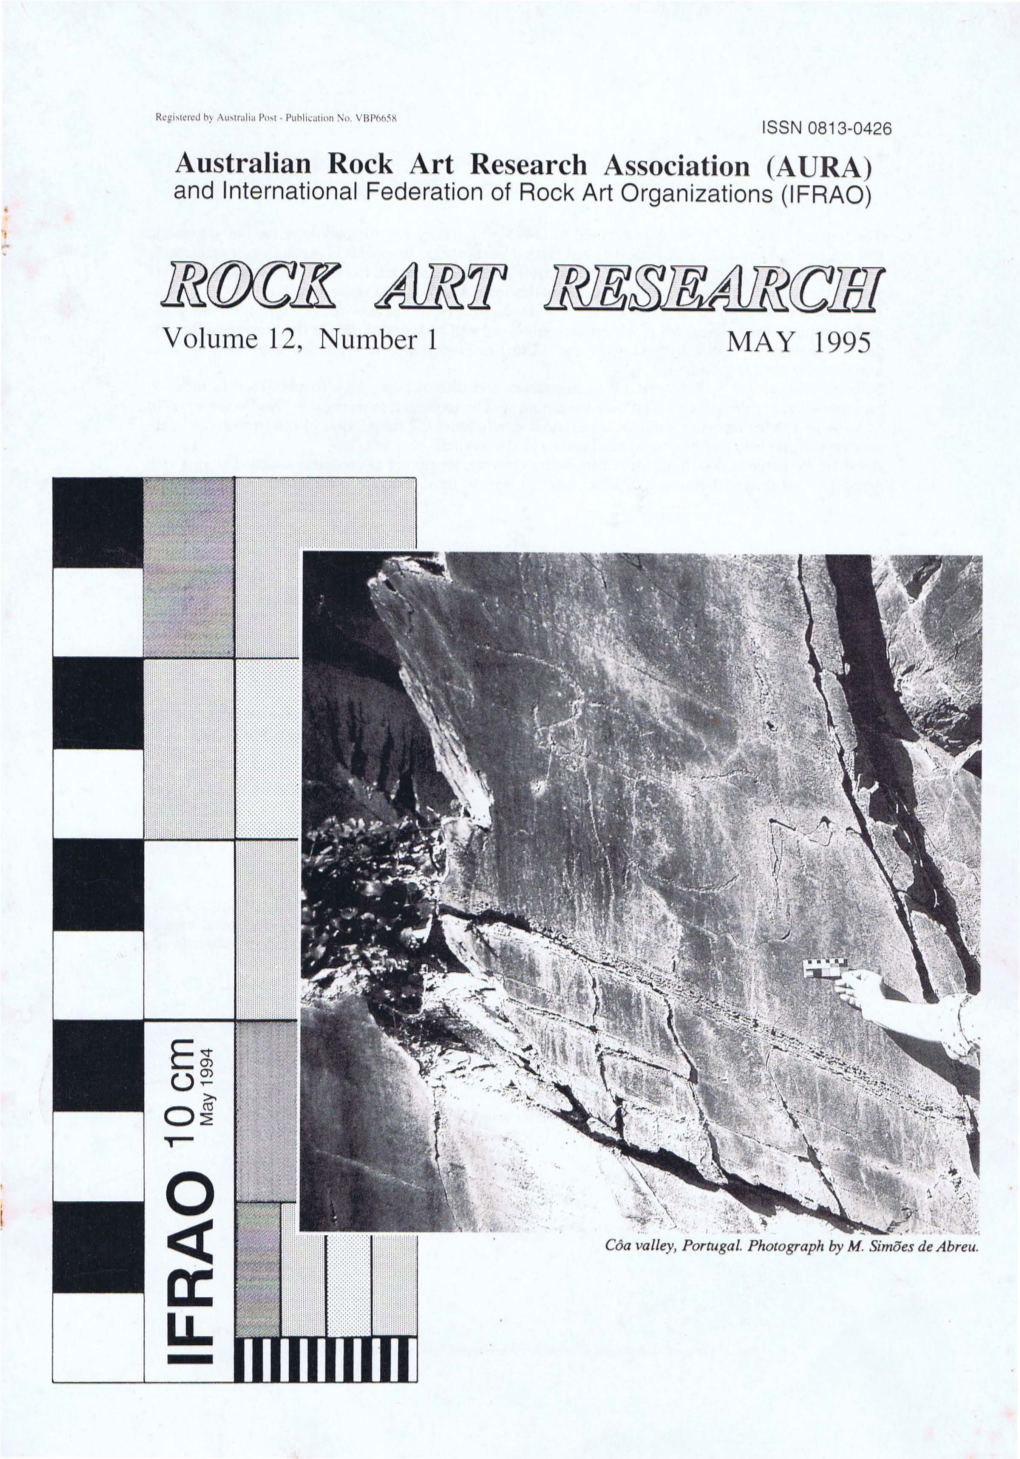 Australian Rock Art Research Association (AURA) and International Federation of Rock Art Organizations (IFRAO)